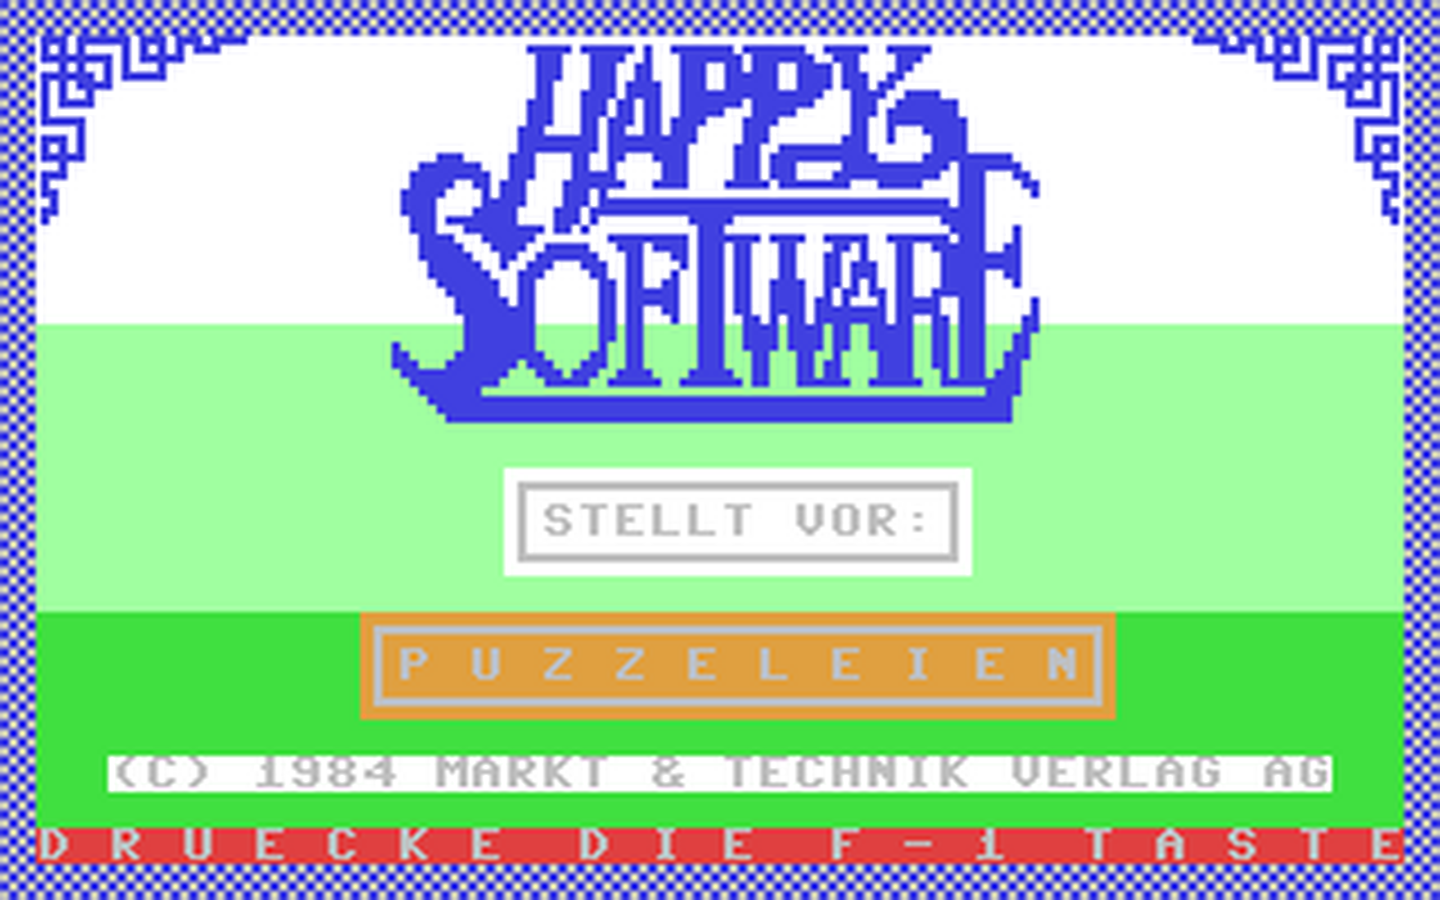 C64 GameBase Puzzeleien Happy_Software_[Markt_&_Technik] 1984